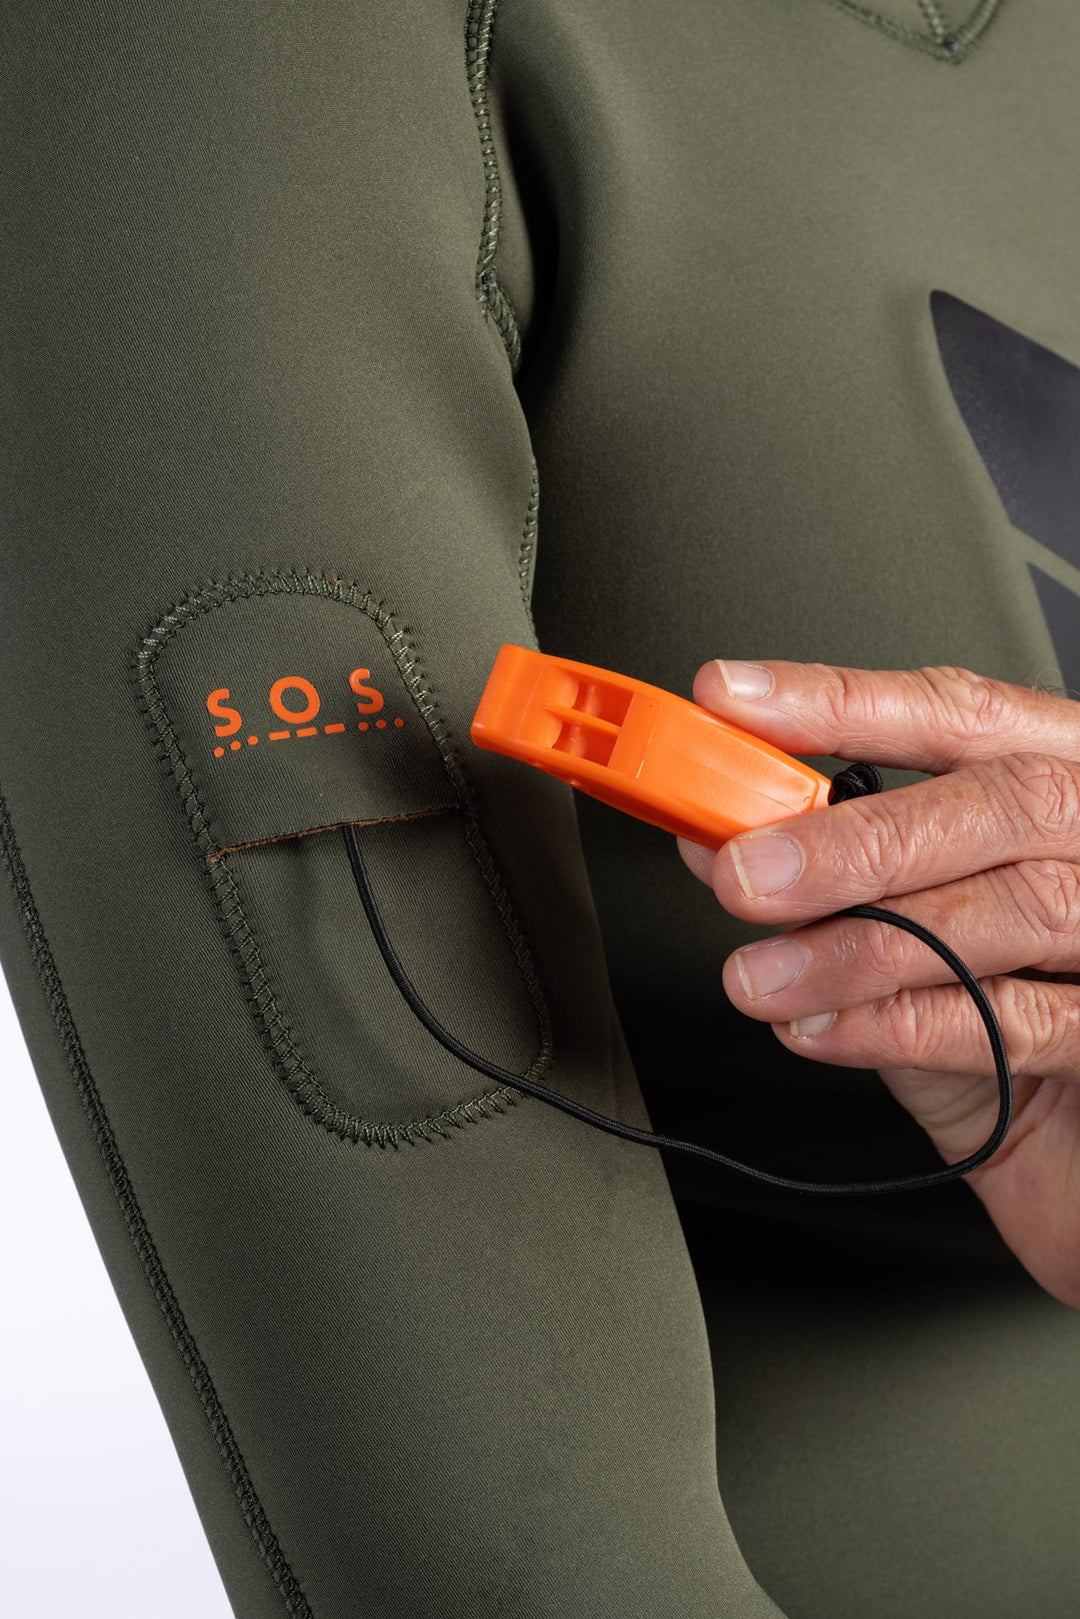 Men's Ranger Green Essentials Pro 3.0mm Wetsuit